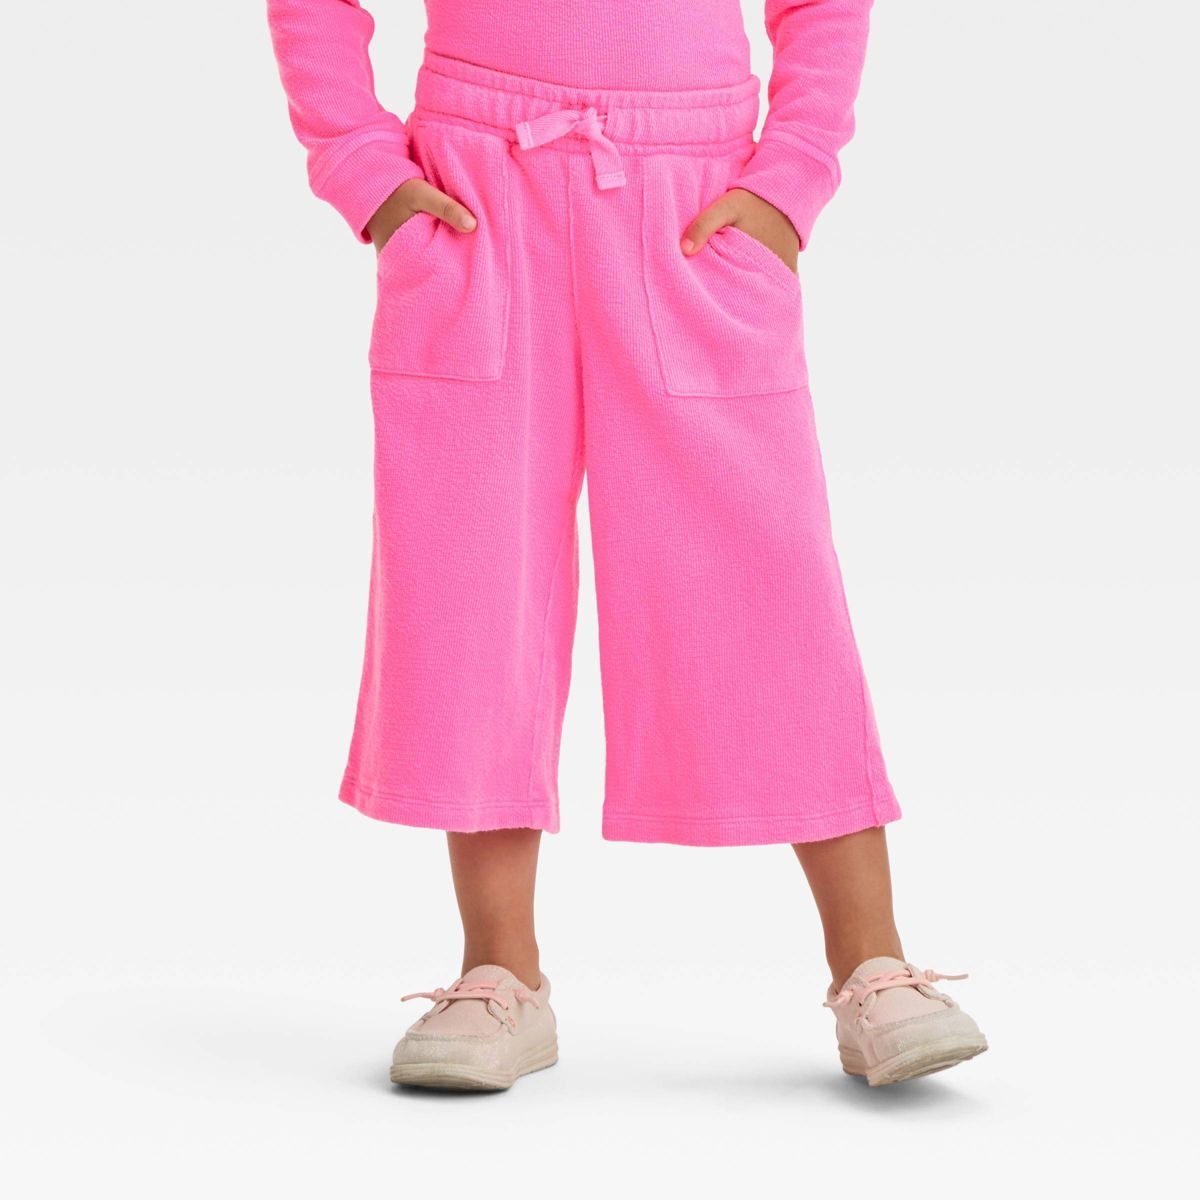 Toddler Girls' Pants - Cat & Jack™ Neon Pink 4T | Target